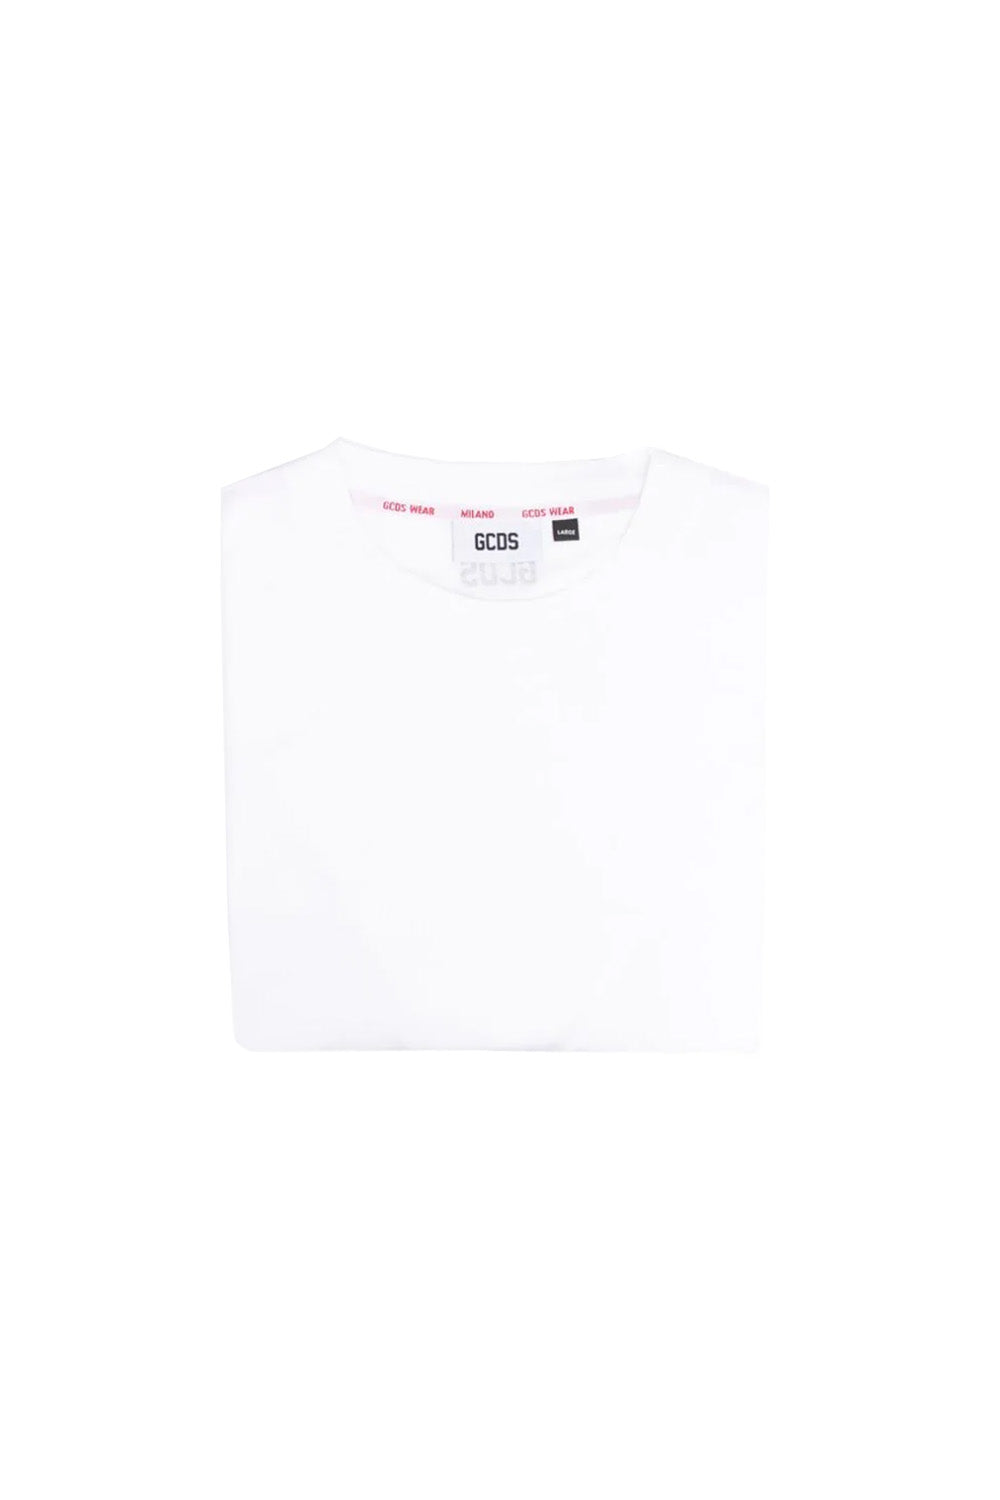 Gcds logo-print cotton T-shirt